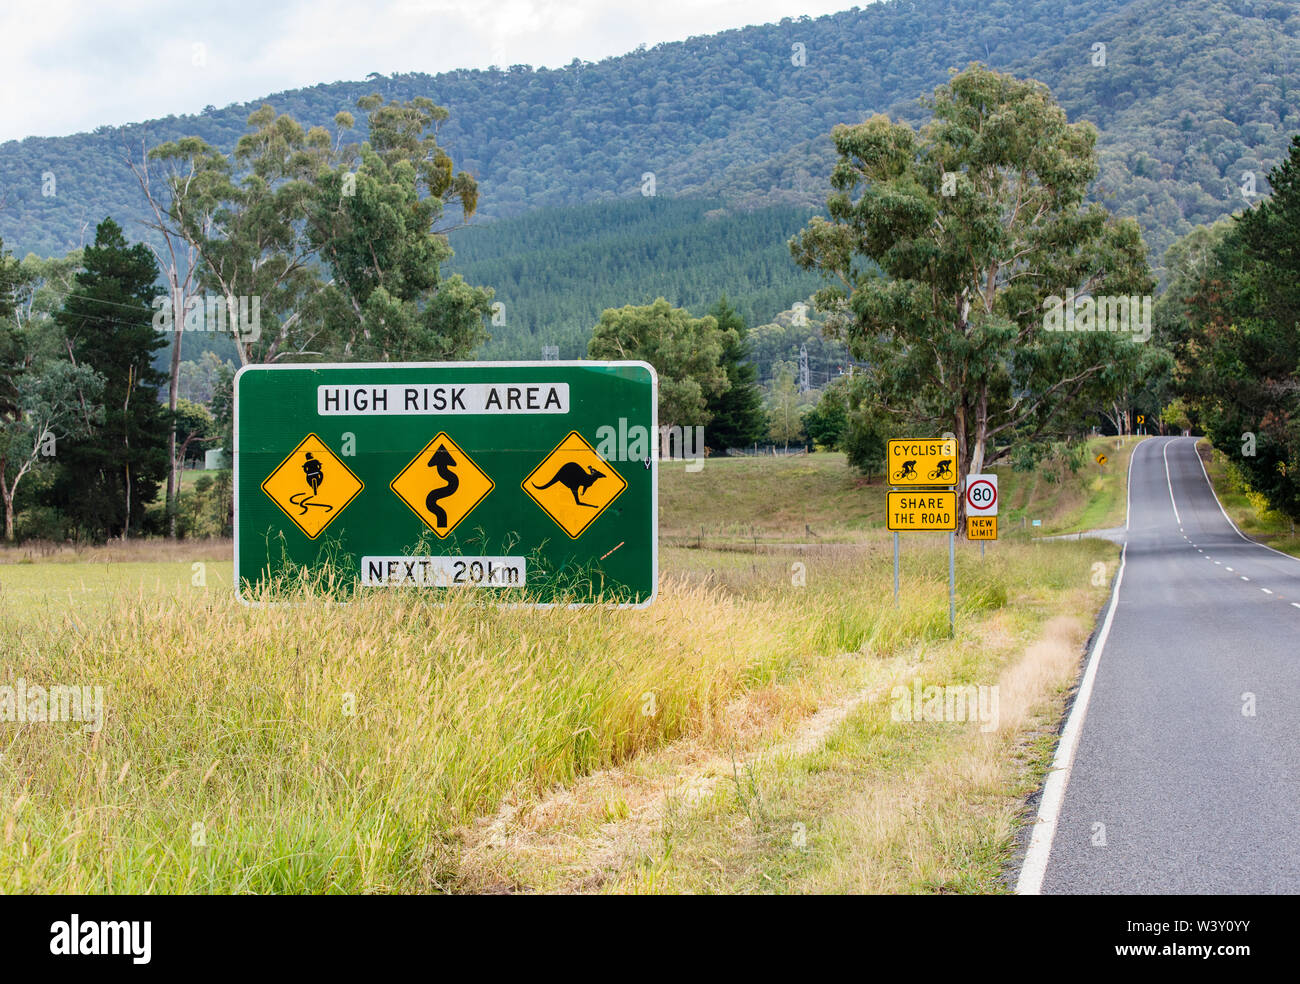 Variété de panneaux routiers australiens y compris zone à haut risque, les cyclistes partagent la route et nouvelle limite de vitesse sur route en haut pays Australie Victoria Banque D'Images